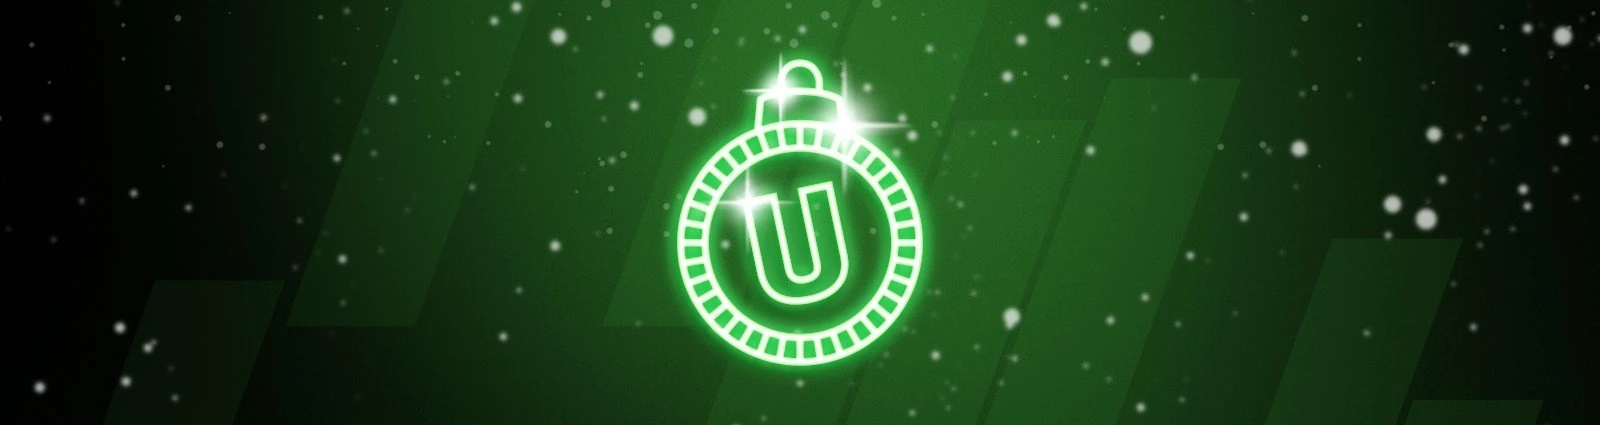 Juleaften bonus til dit spil juleaftensdag på Unibet